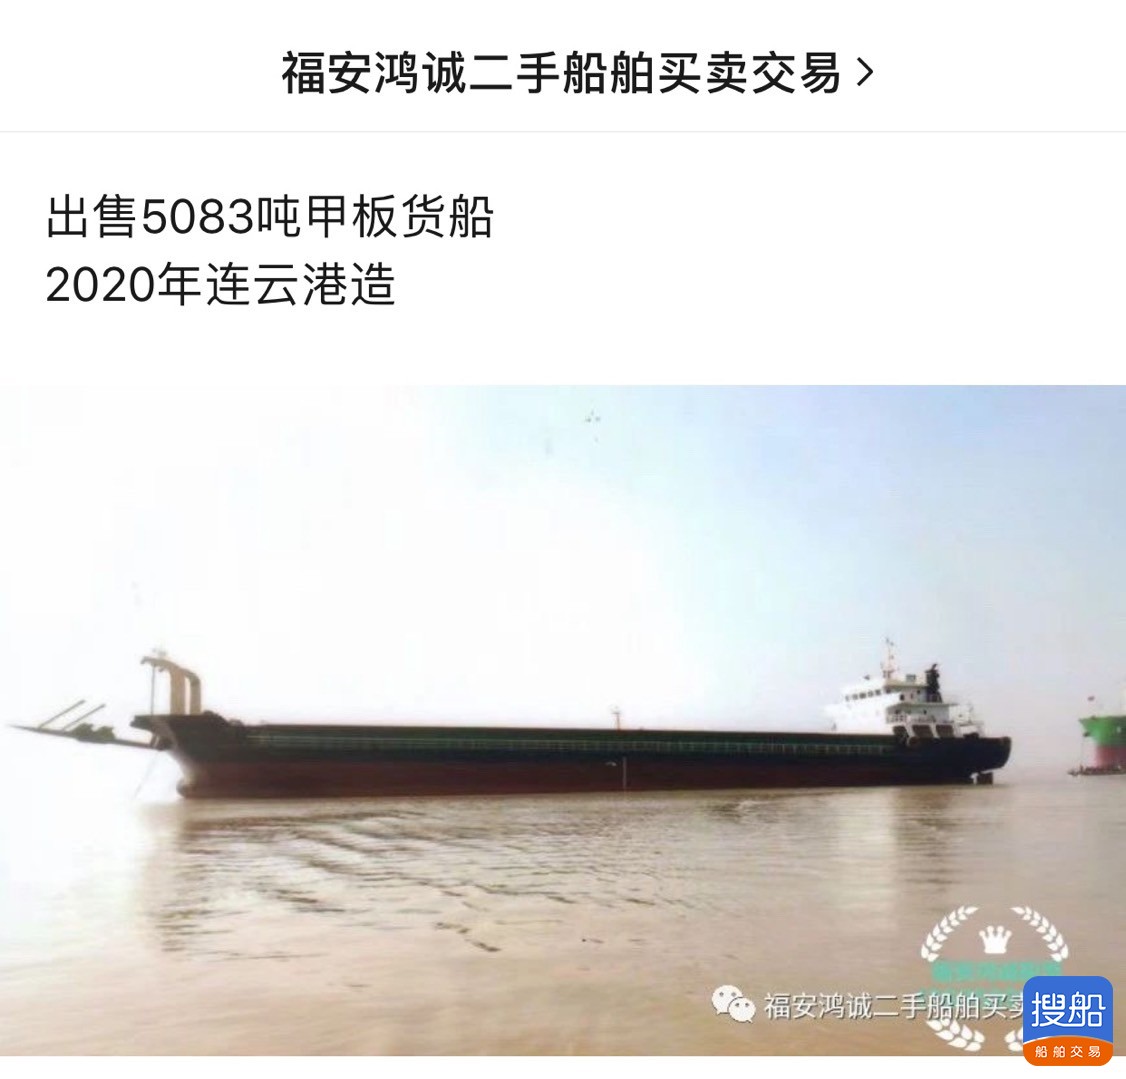 出售2020年造5083吨甲板货船